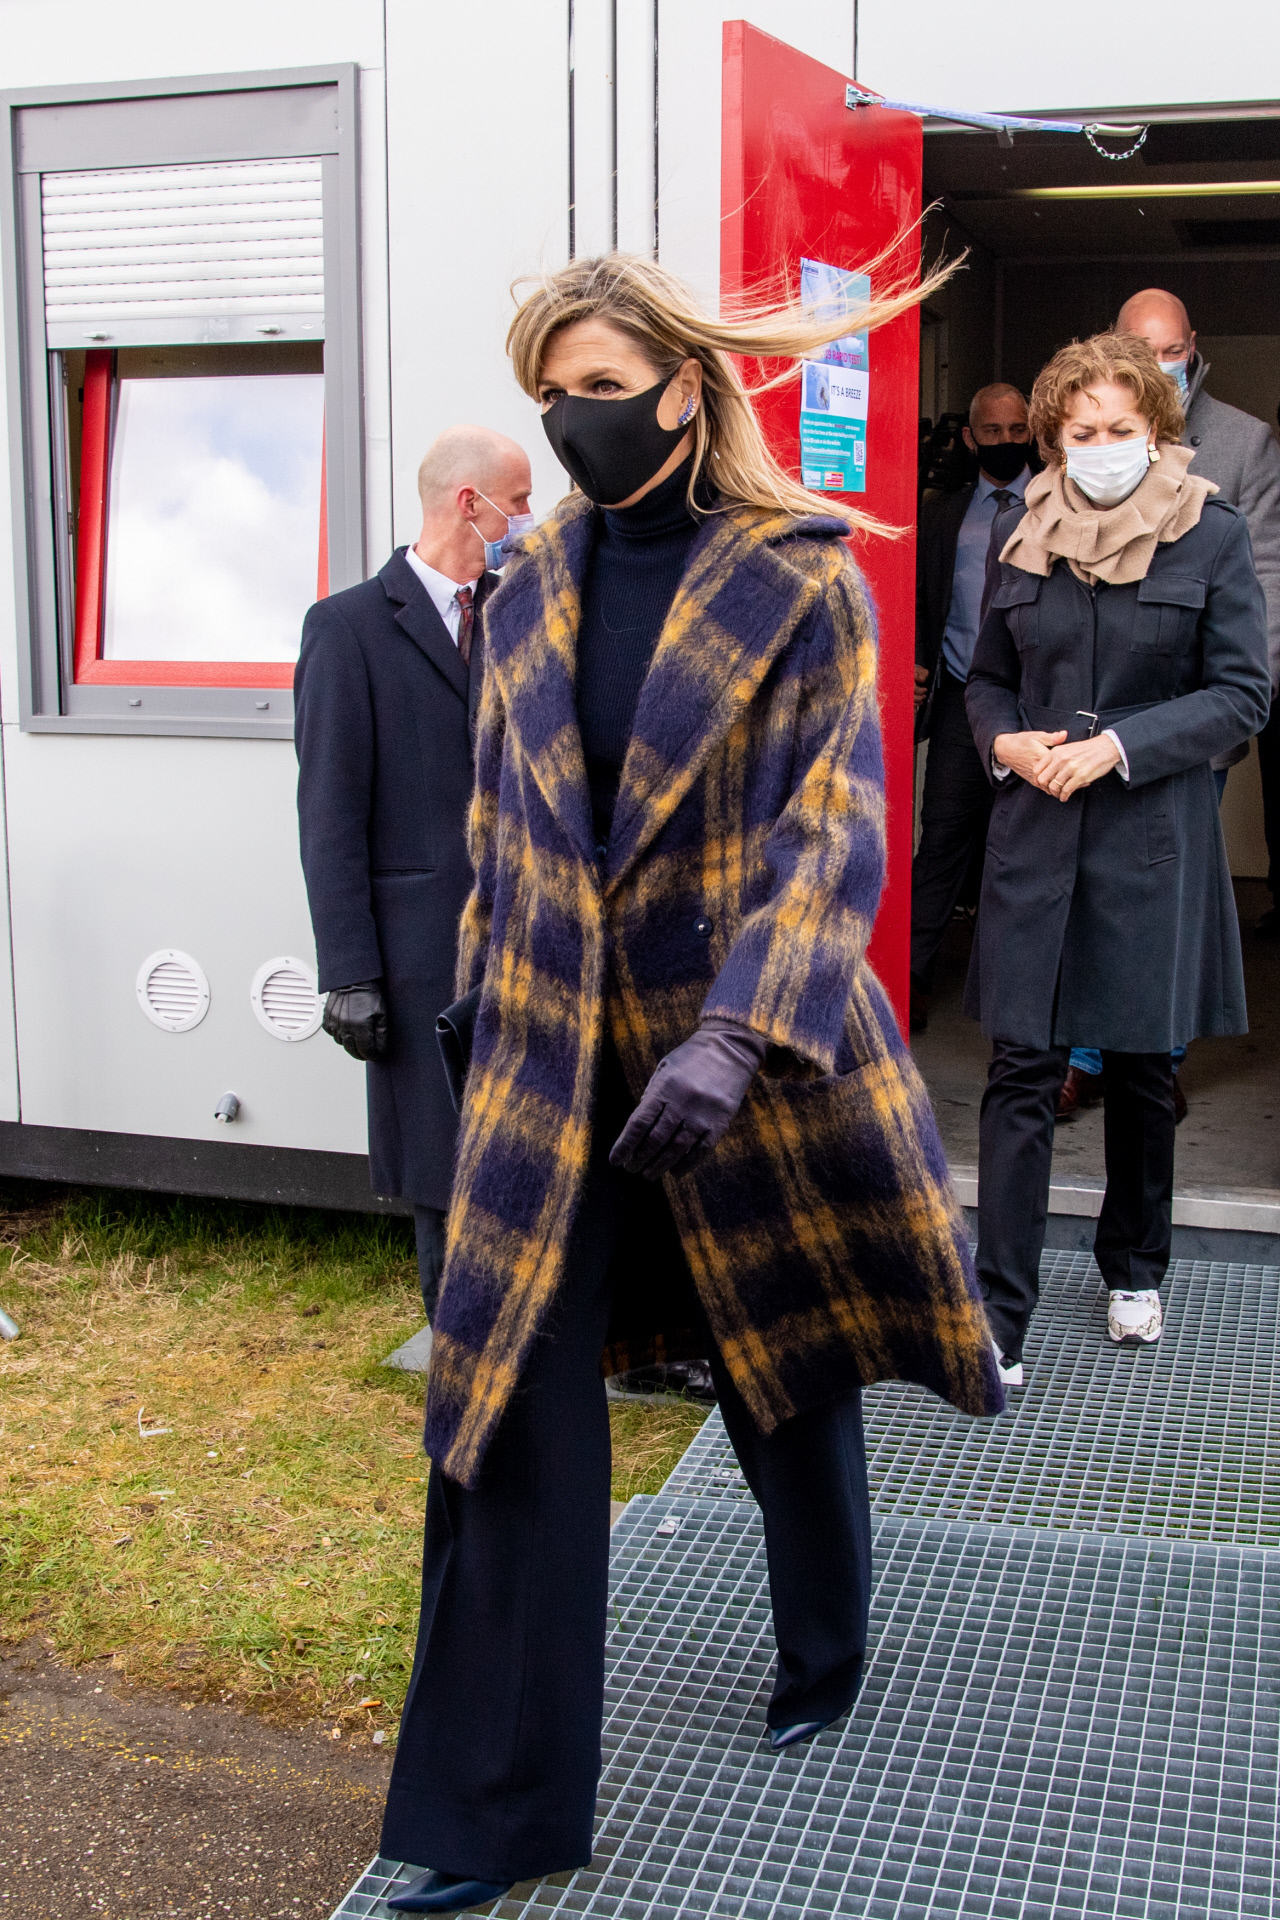 El look de Máxima de Holanda, con abrigo de cuadros.